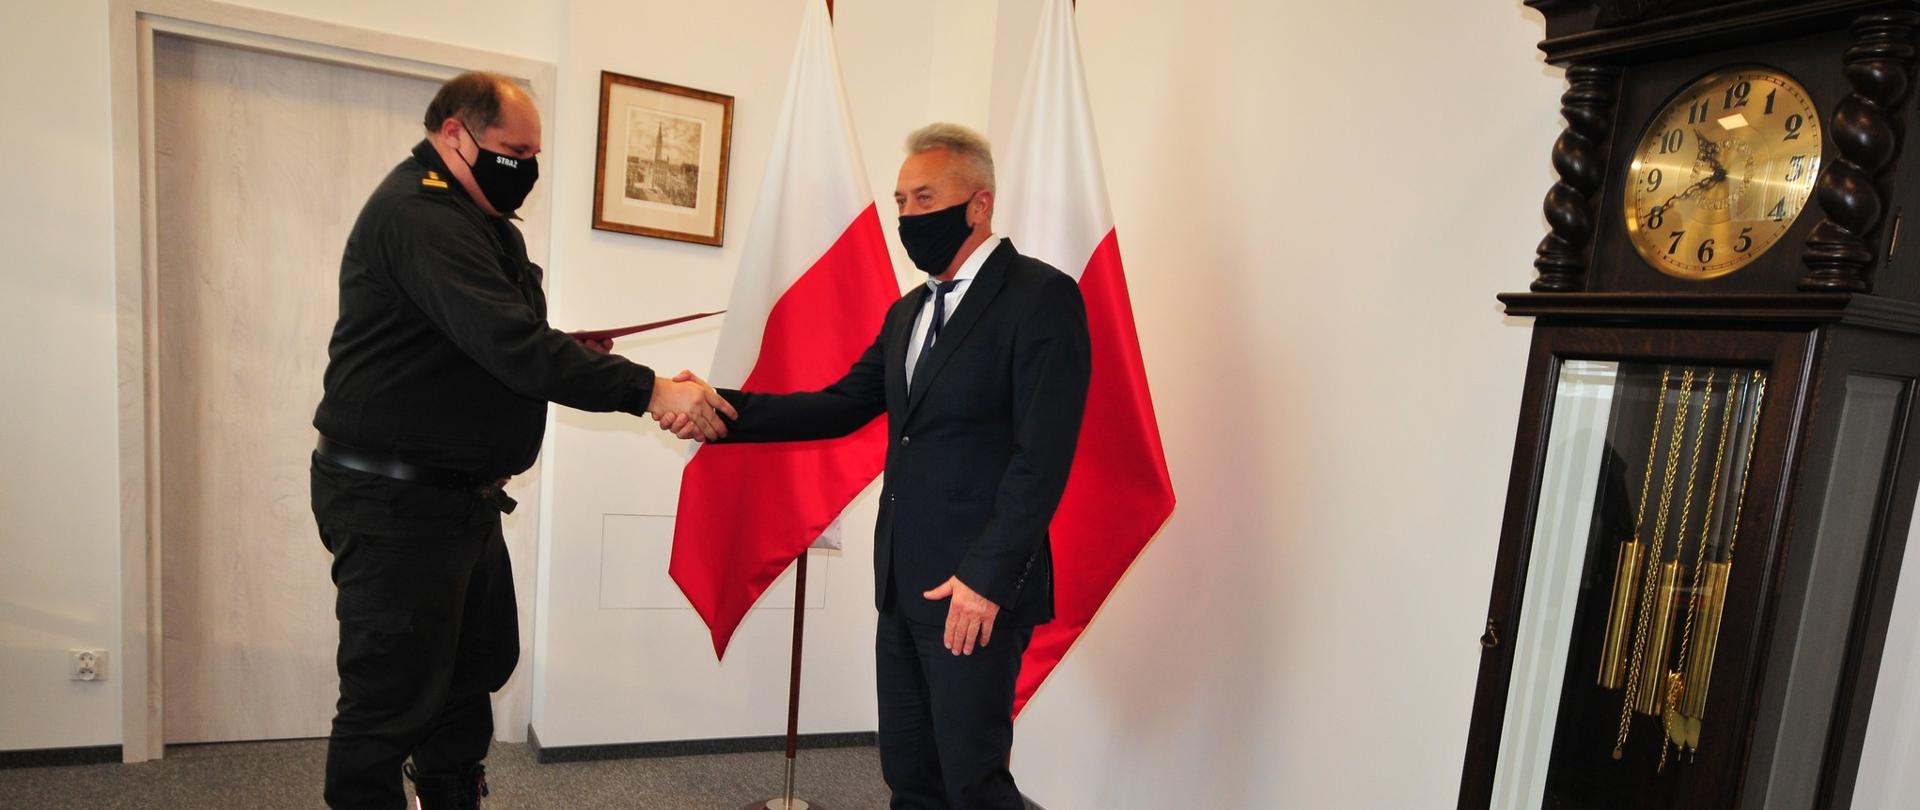 Zdjęcie przedstawia zastępcę pomorskiego komendanta wojewódzkiego PSP oraz przedstawiciela firmy MOTO - TRUCK Sp. z o.o. po podpisaniu umowy.